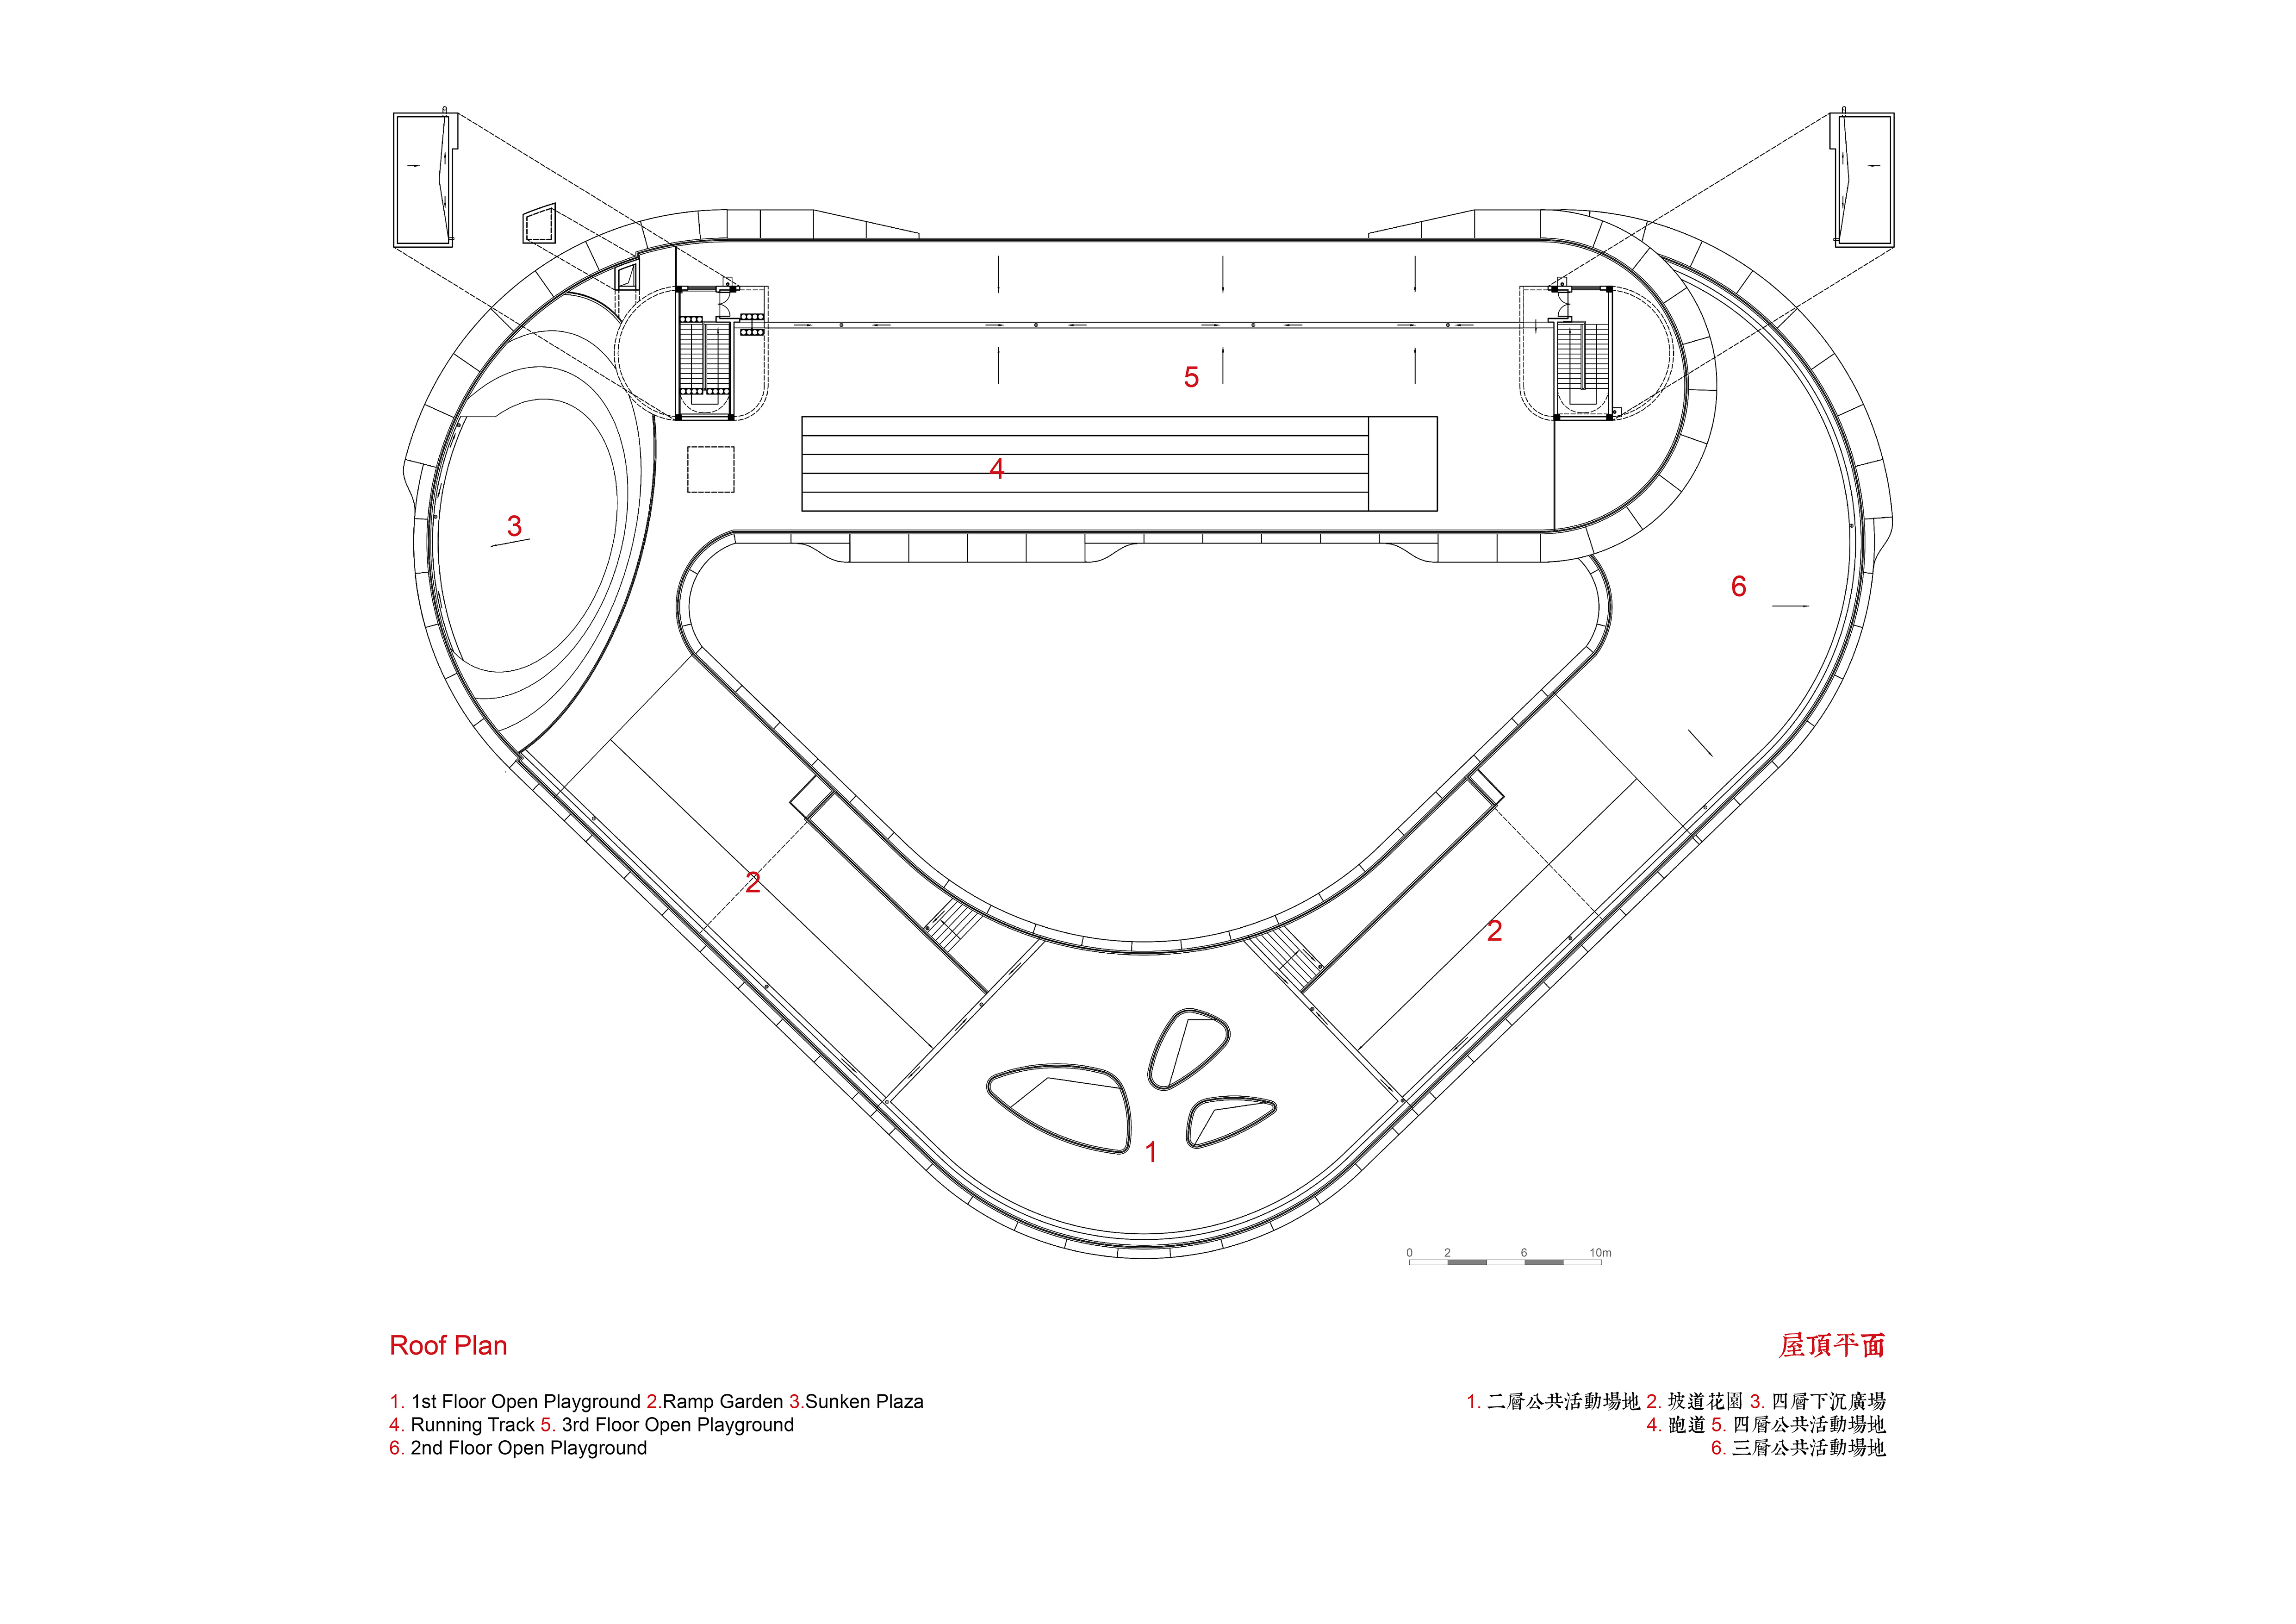 05. 旭辉甜甜圈幼儿园 屋顶层平面图 CIFI Donut Kindergarten Roof Plan.jpg